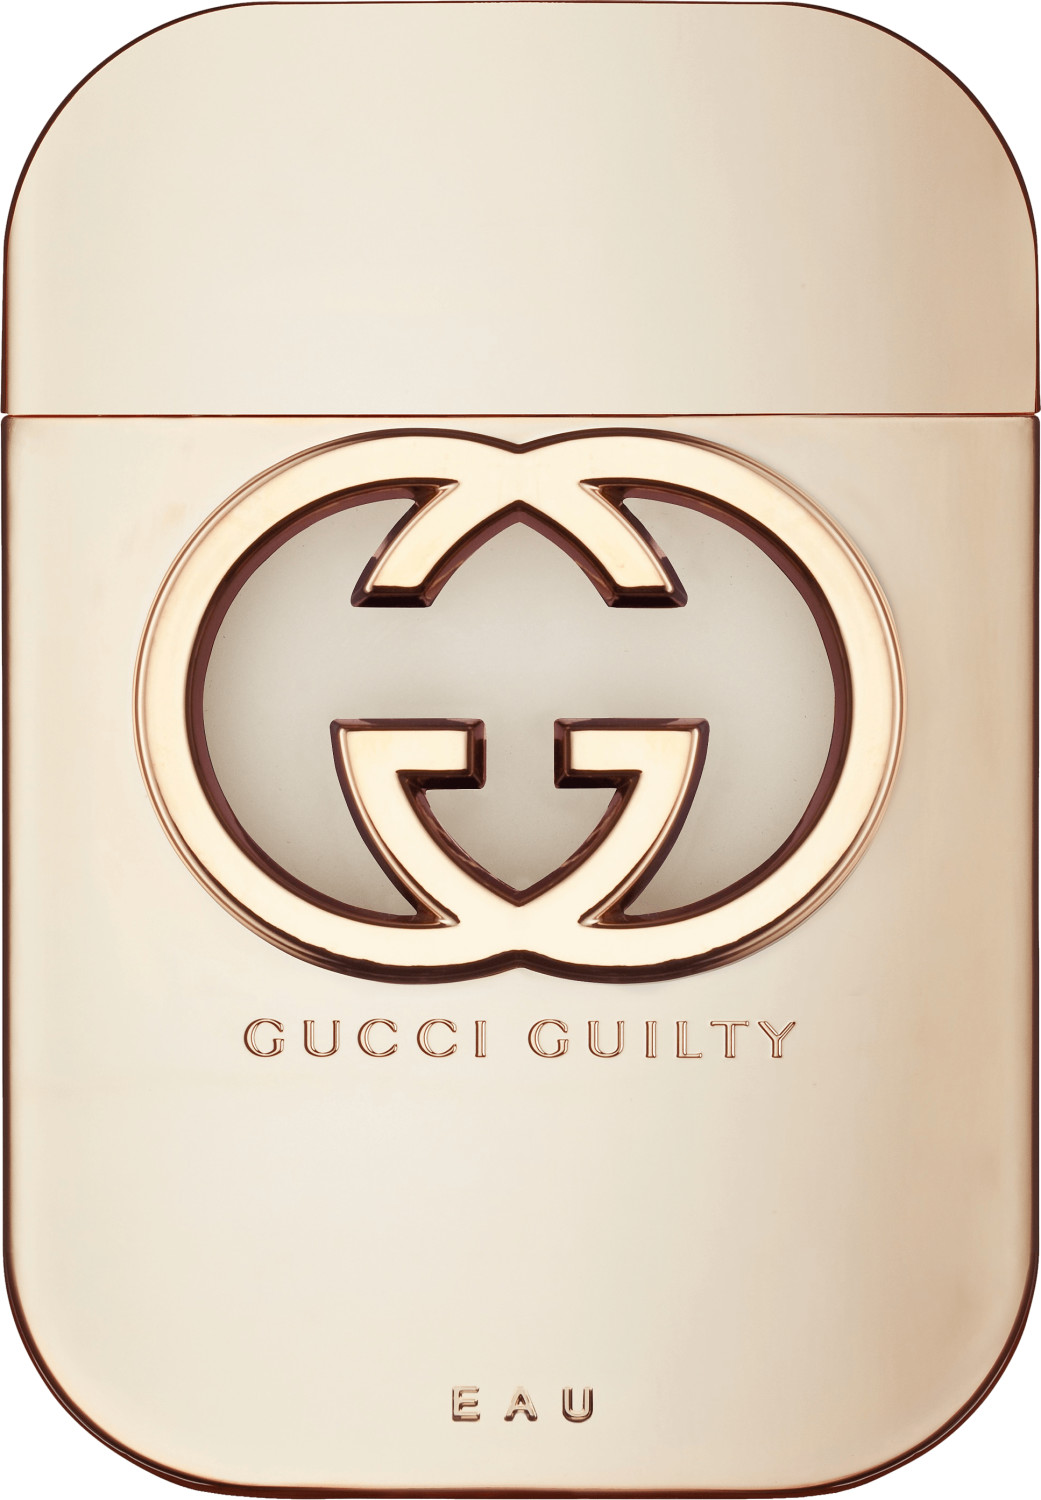 Туалетная вода gucci guilty. Gucci guilty Eau туалетная вода. Gucci guilty Eau 75 мл. Духи Gucci guilty женские. Gucci guilty Eau pour femme.